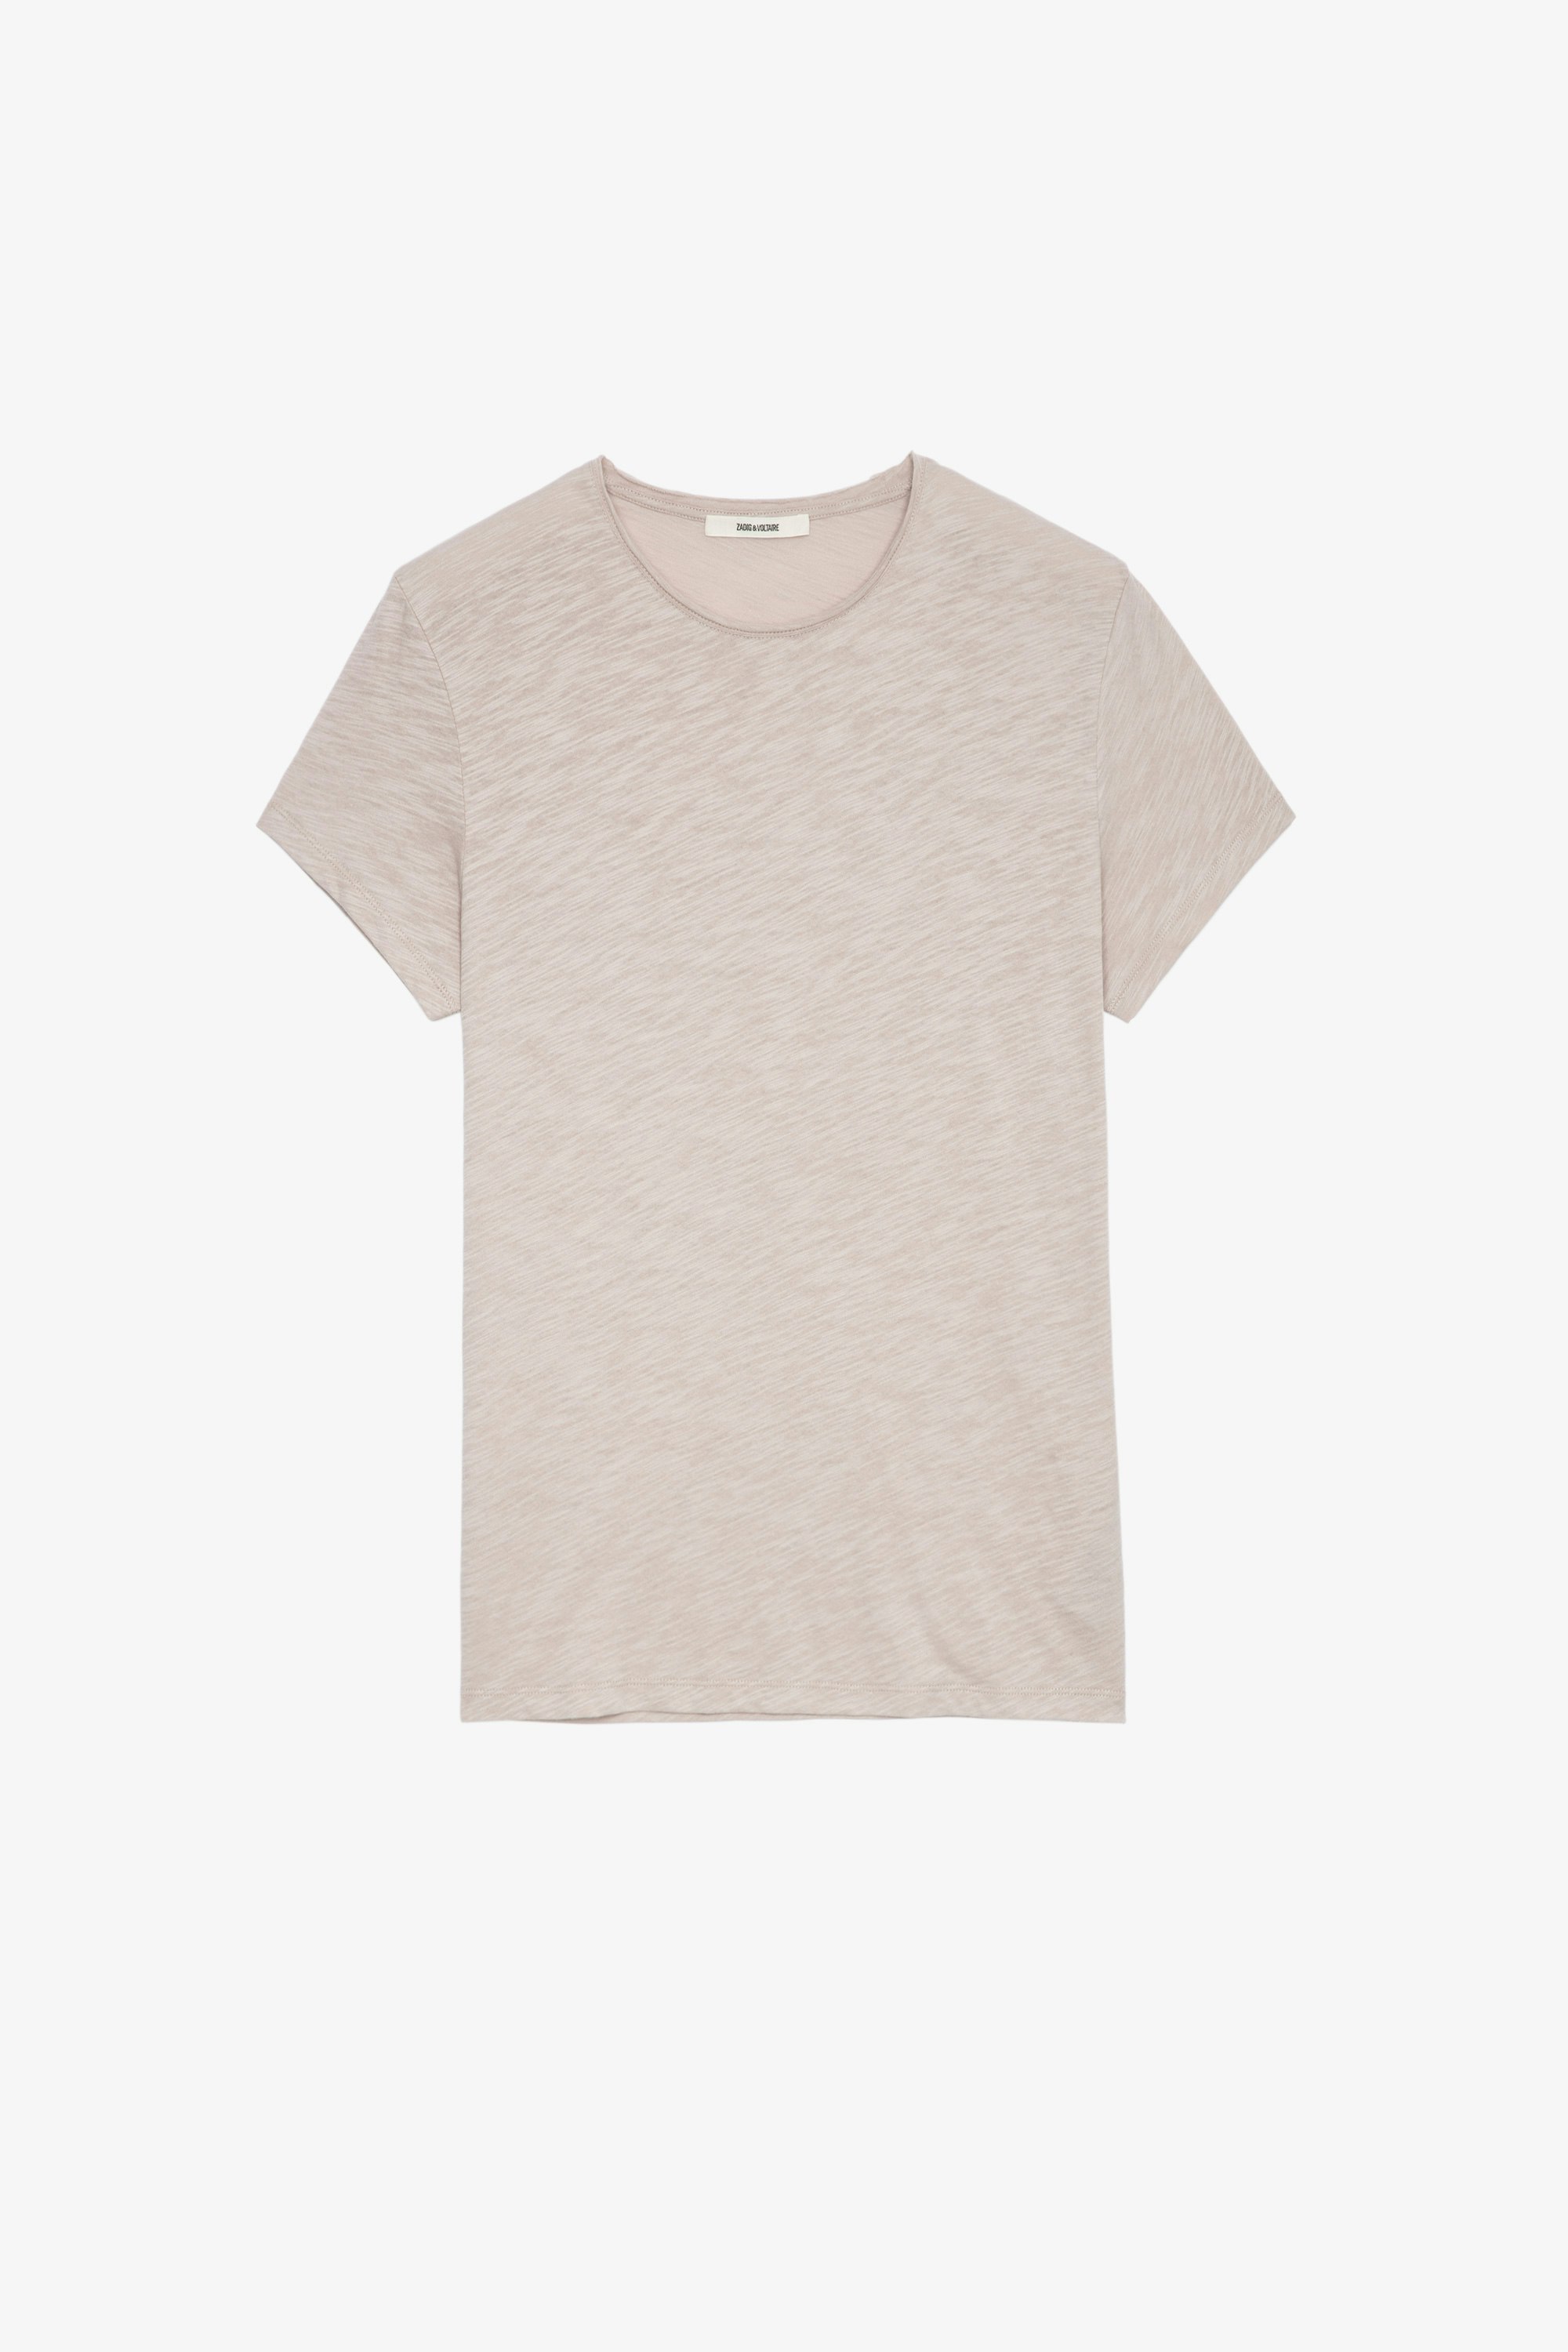 Toby Slub T-Shirt Men's beige slubbed cotton T-shirt